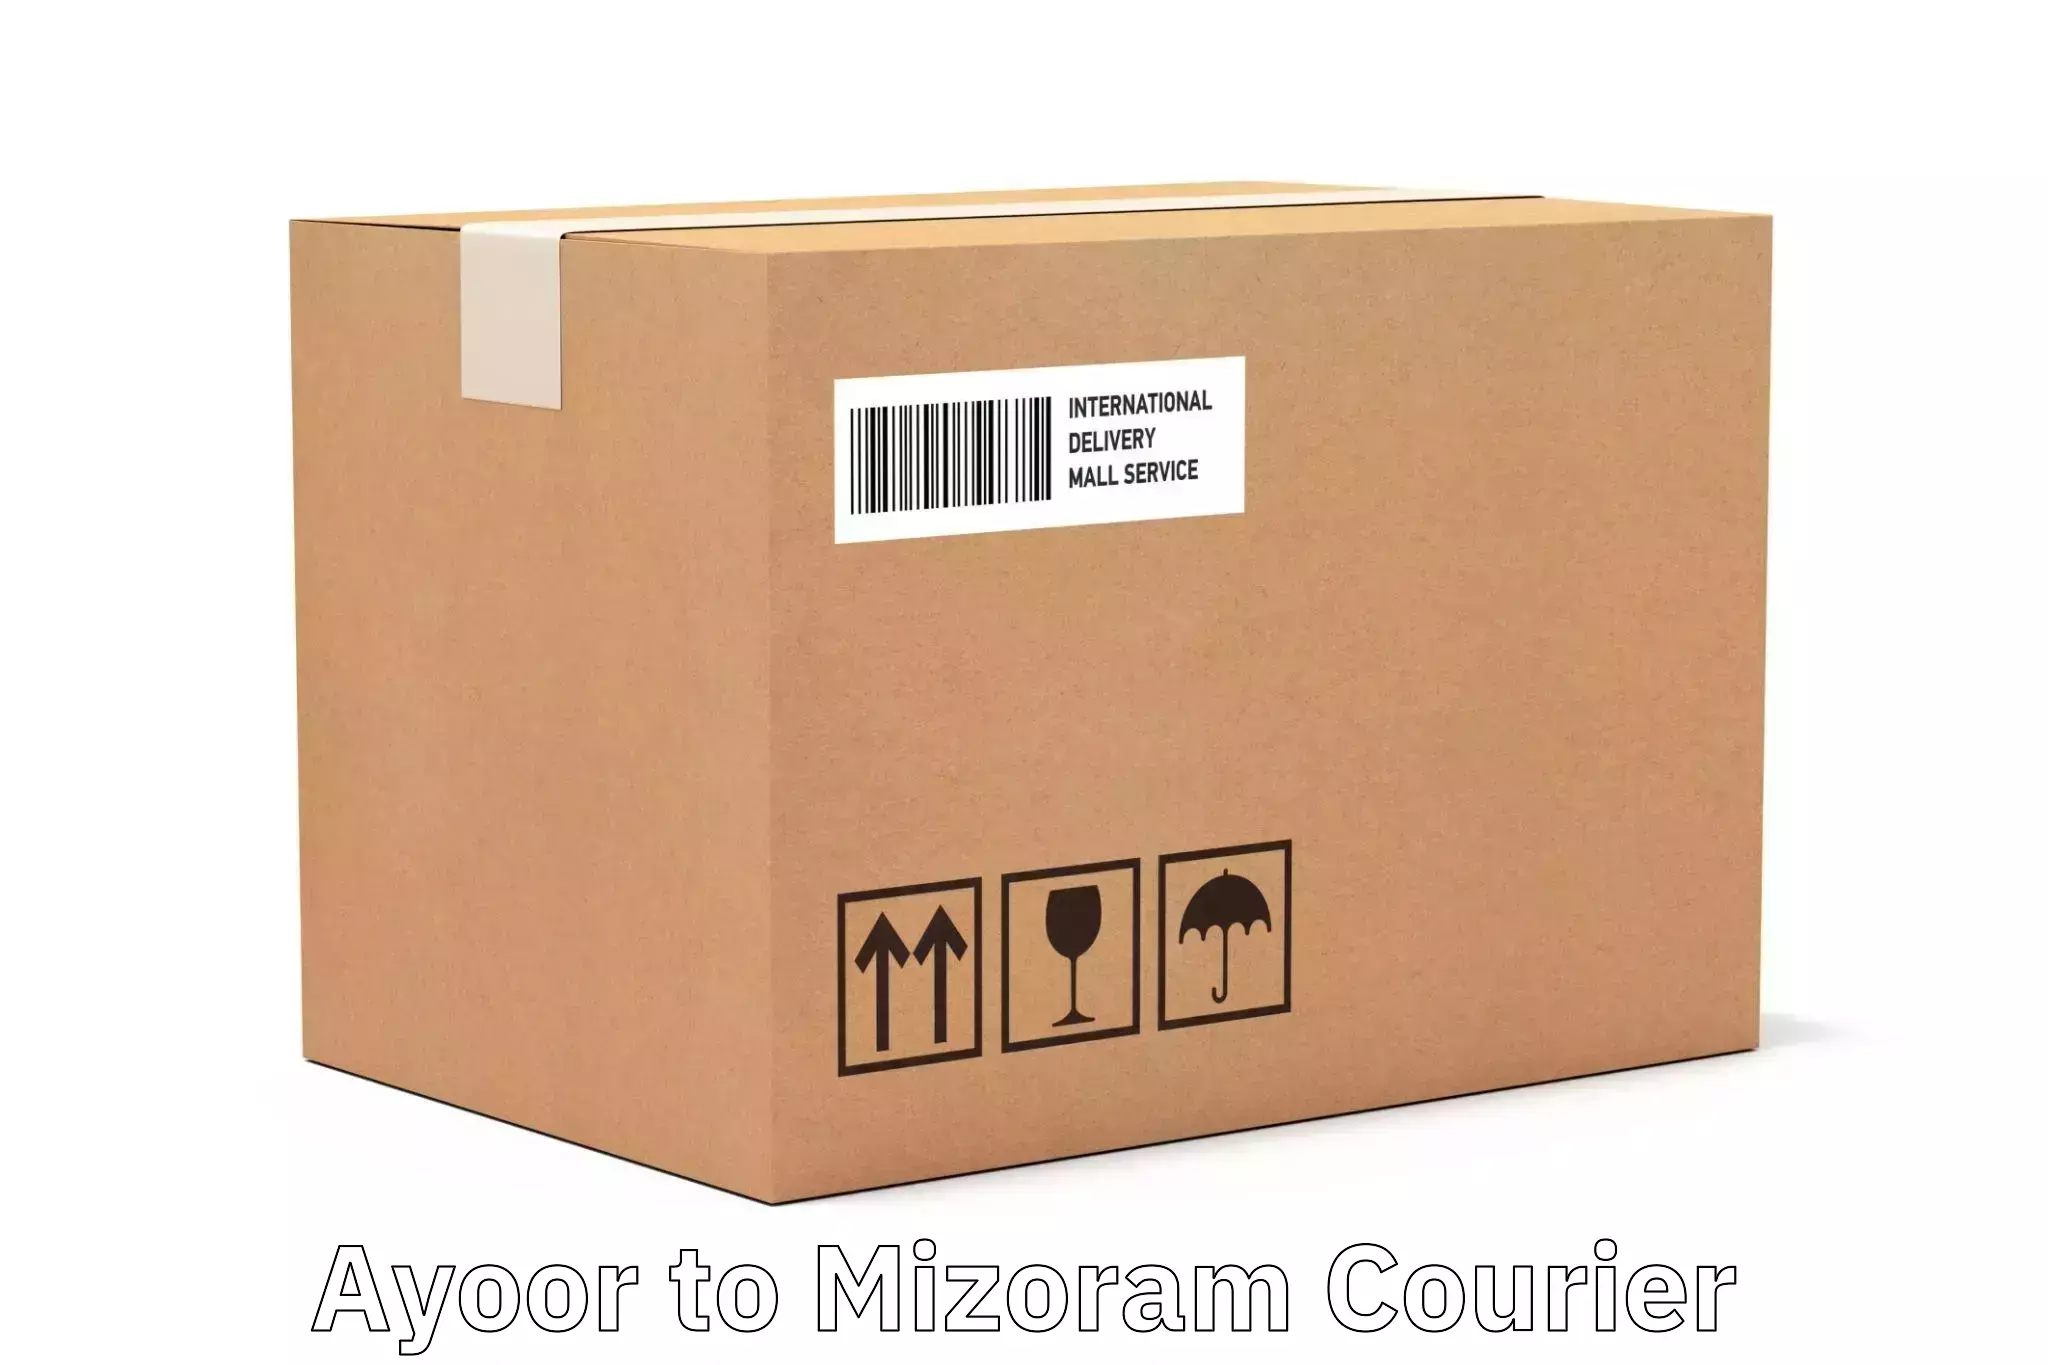 User-friendly courier app Ayoor to Mizoram